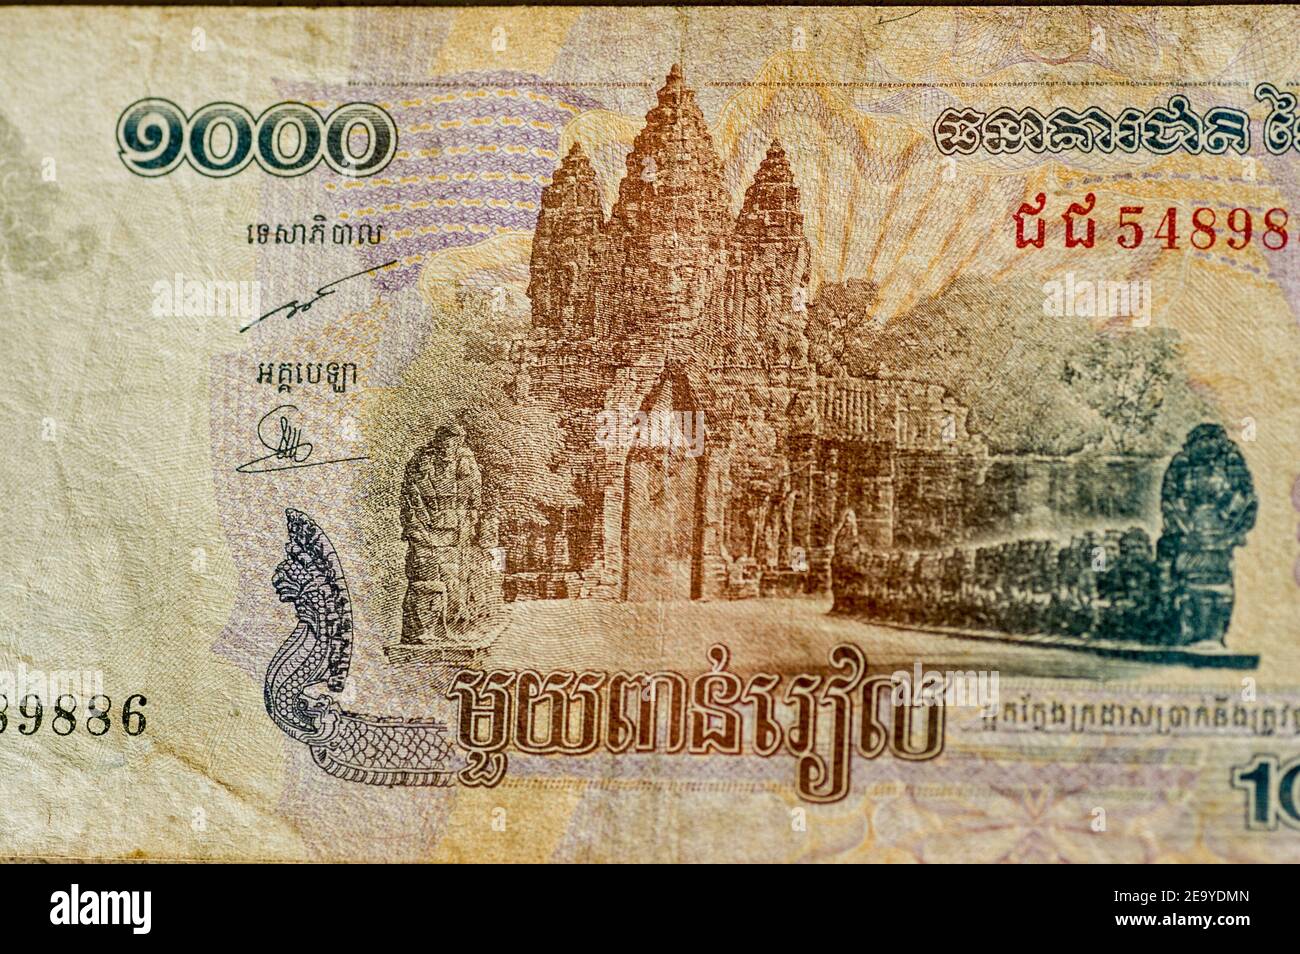 Parte di una banconota da mille Riels della Cambogia che mostra la porta della Vittoria ad Angkor Thom, parte del sito Patrimonio Mondiale dell'UNESCO di Angkor. Usato ba Foto Stock